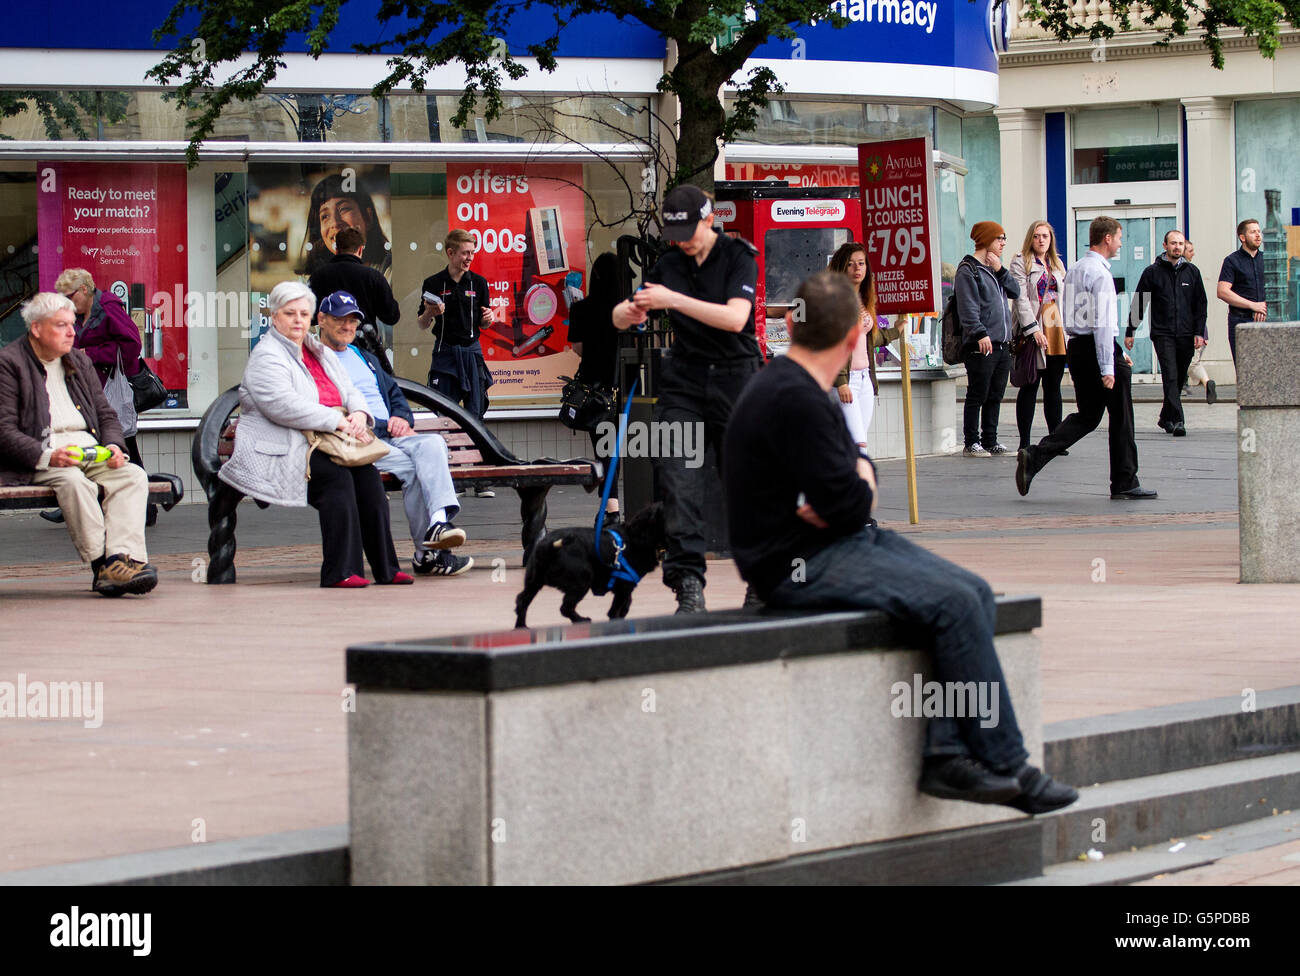 Dundee, Tayside, Scotland, UK. 22. Juni 2016. Eine Polizei Schottland Polizistin Ausbildung ein Spürhund in Dundee Stadtzentrum als Teil von The Crime Stoppers UK und Keep Britain Safe-Richtlinie. Bildnachweis: Dundee Photographics / Alamy Live News Stockfoto